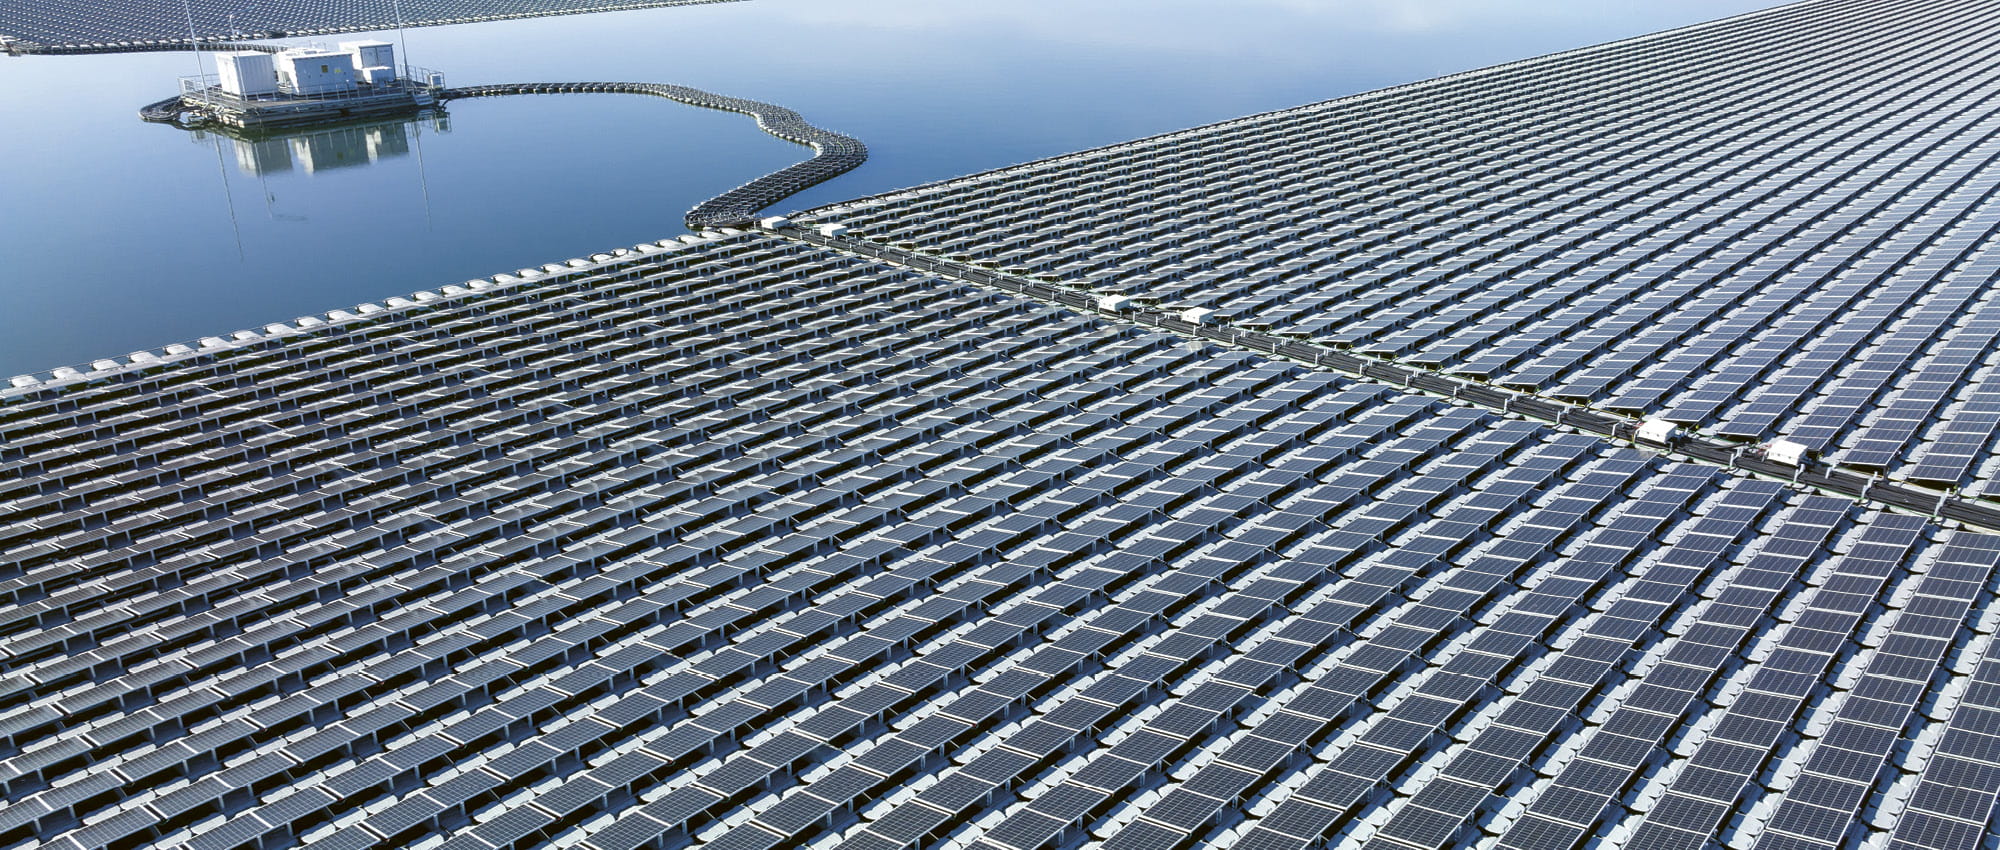 Solarpannels auf dem Wasser. Copyright: shutterstock/Avigator Fortuner